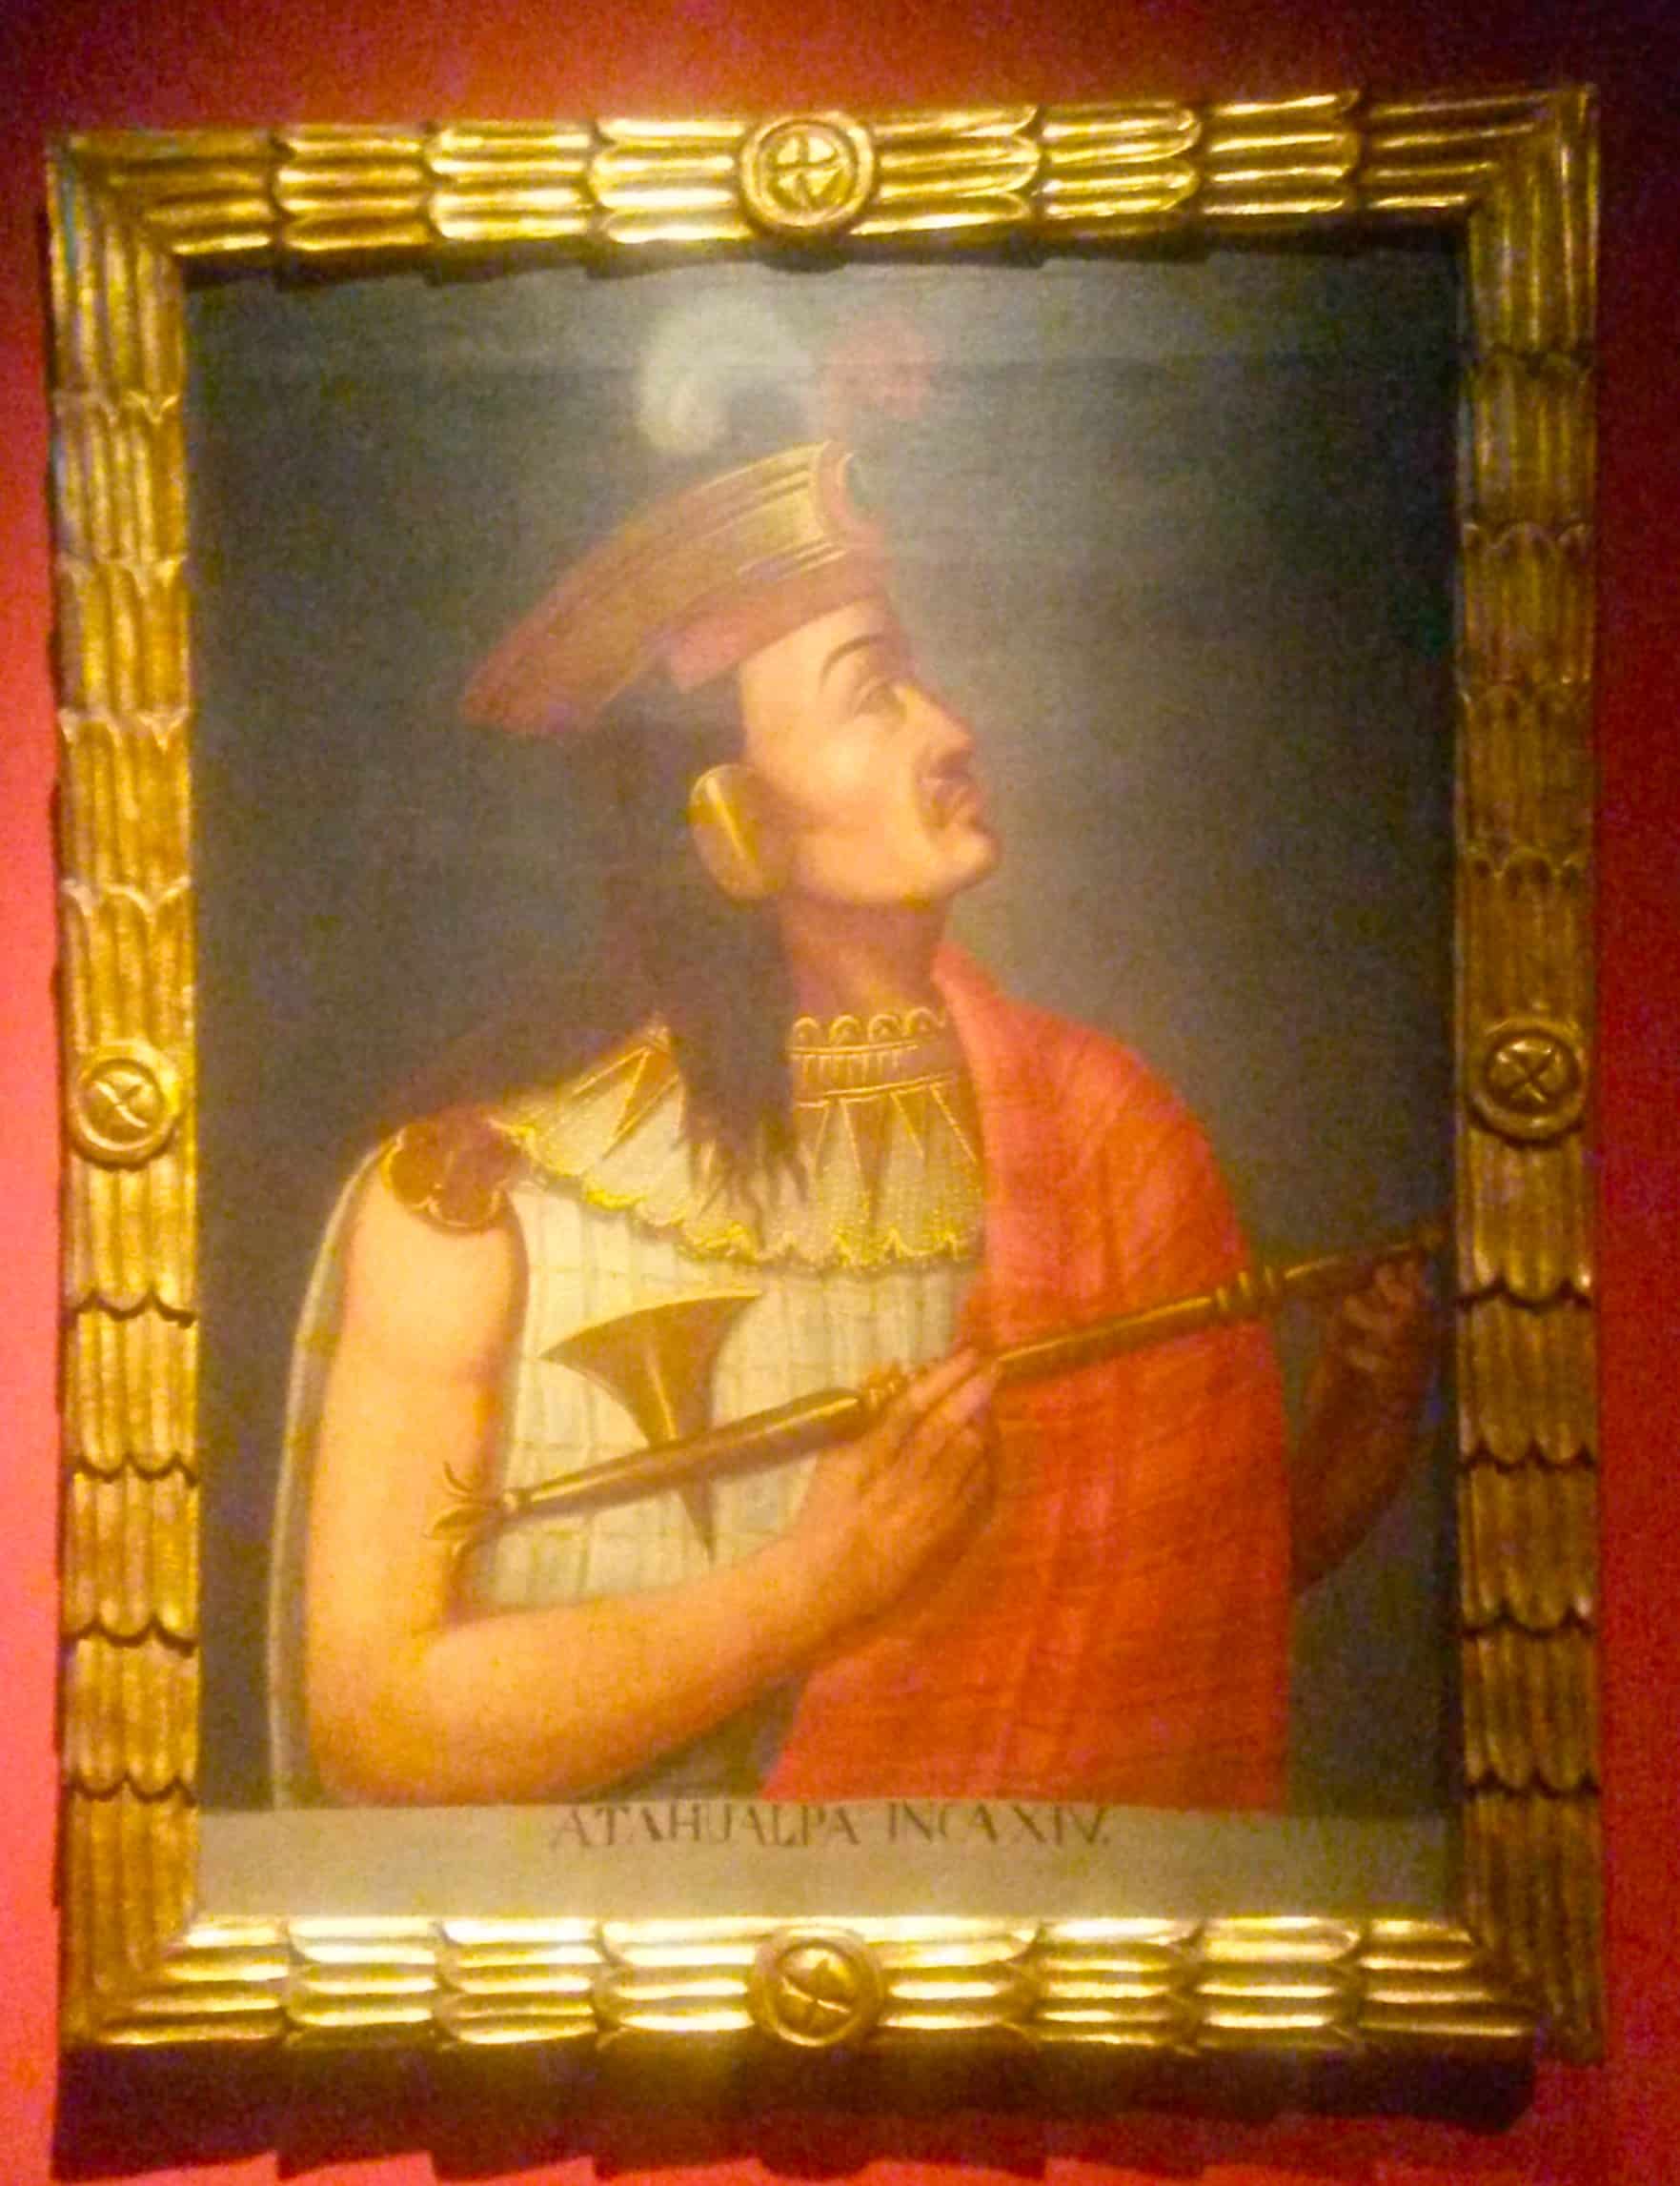 Atahualpa